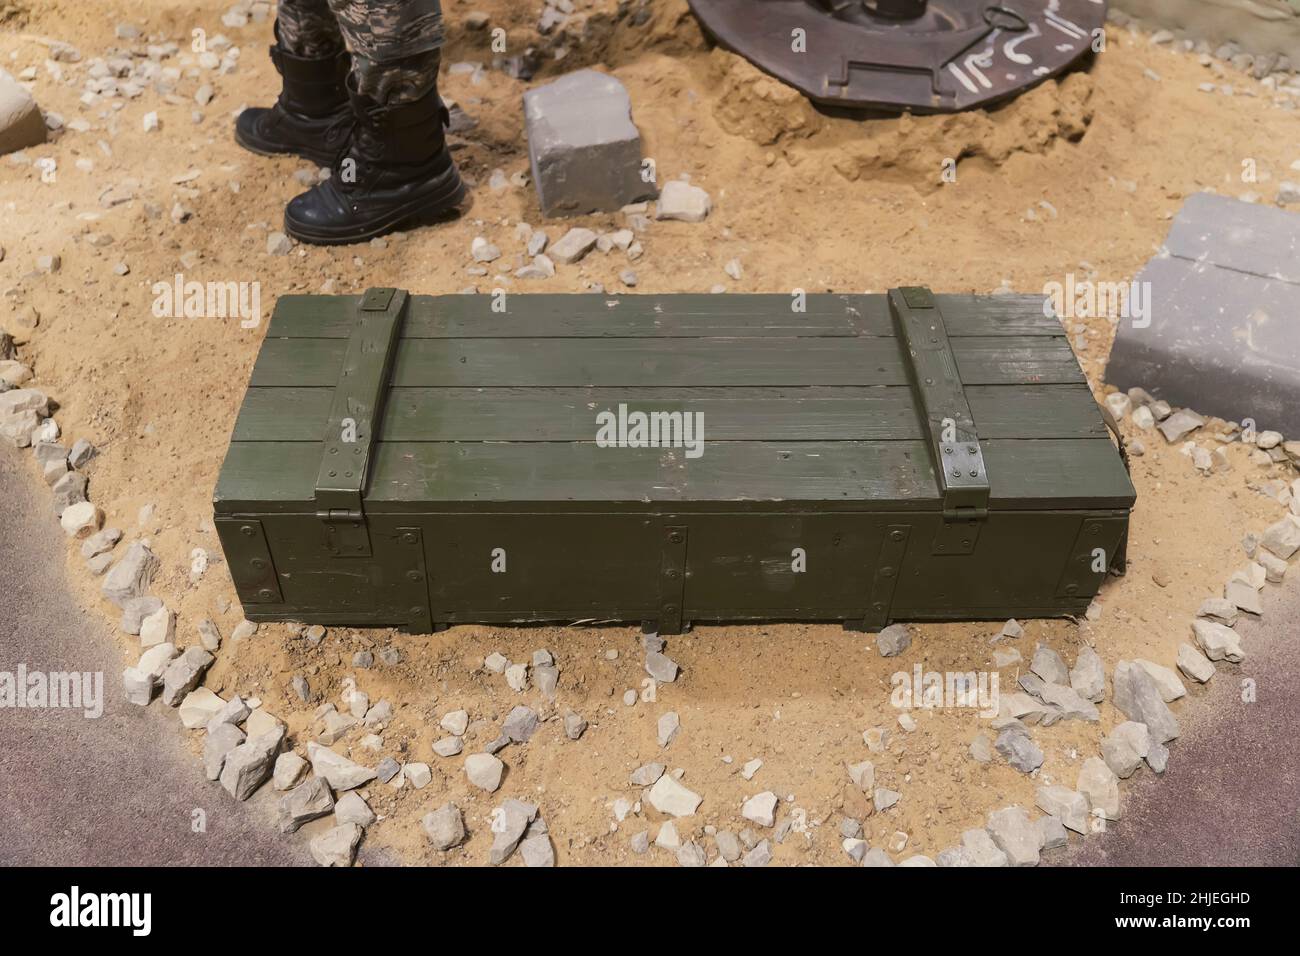 Una scatola verde con munizioni militari sulla sabbia. Assistenza militare. Forniture militari. Foto Stock